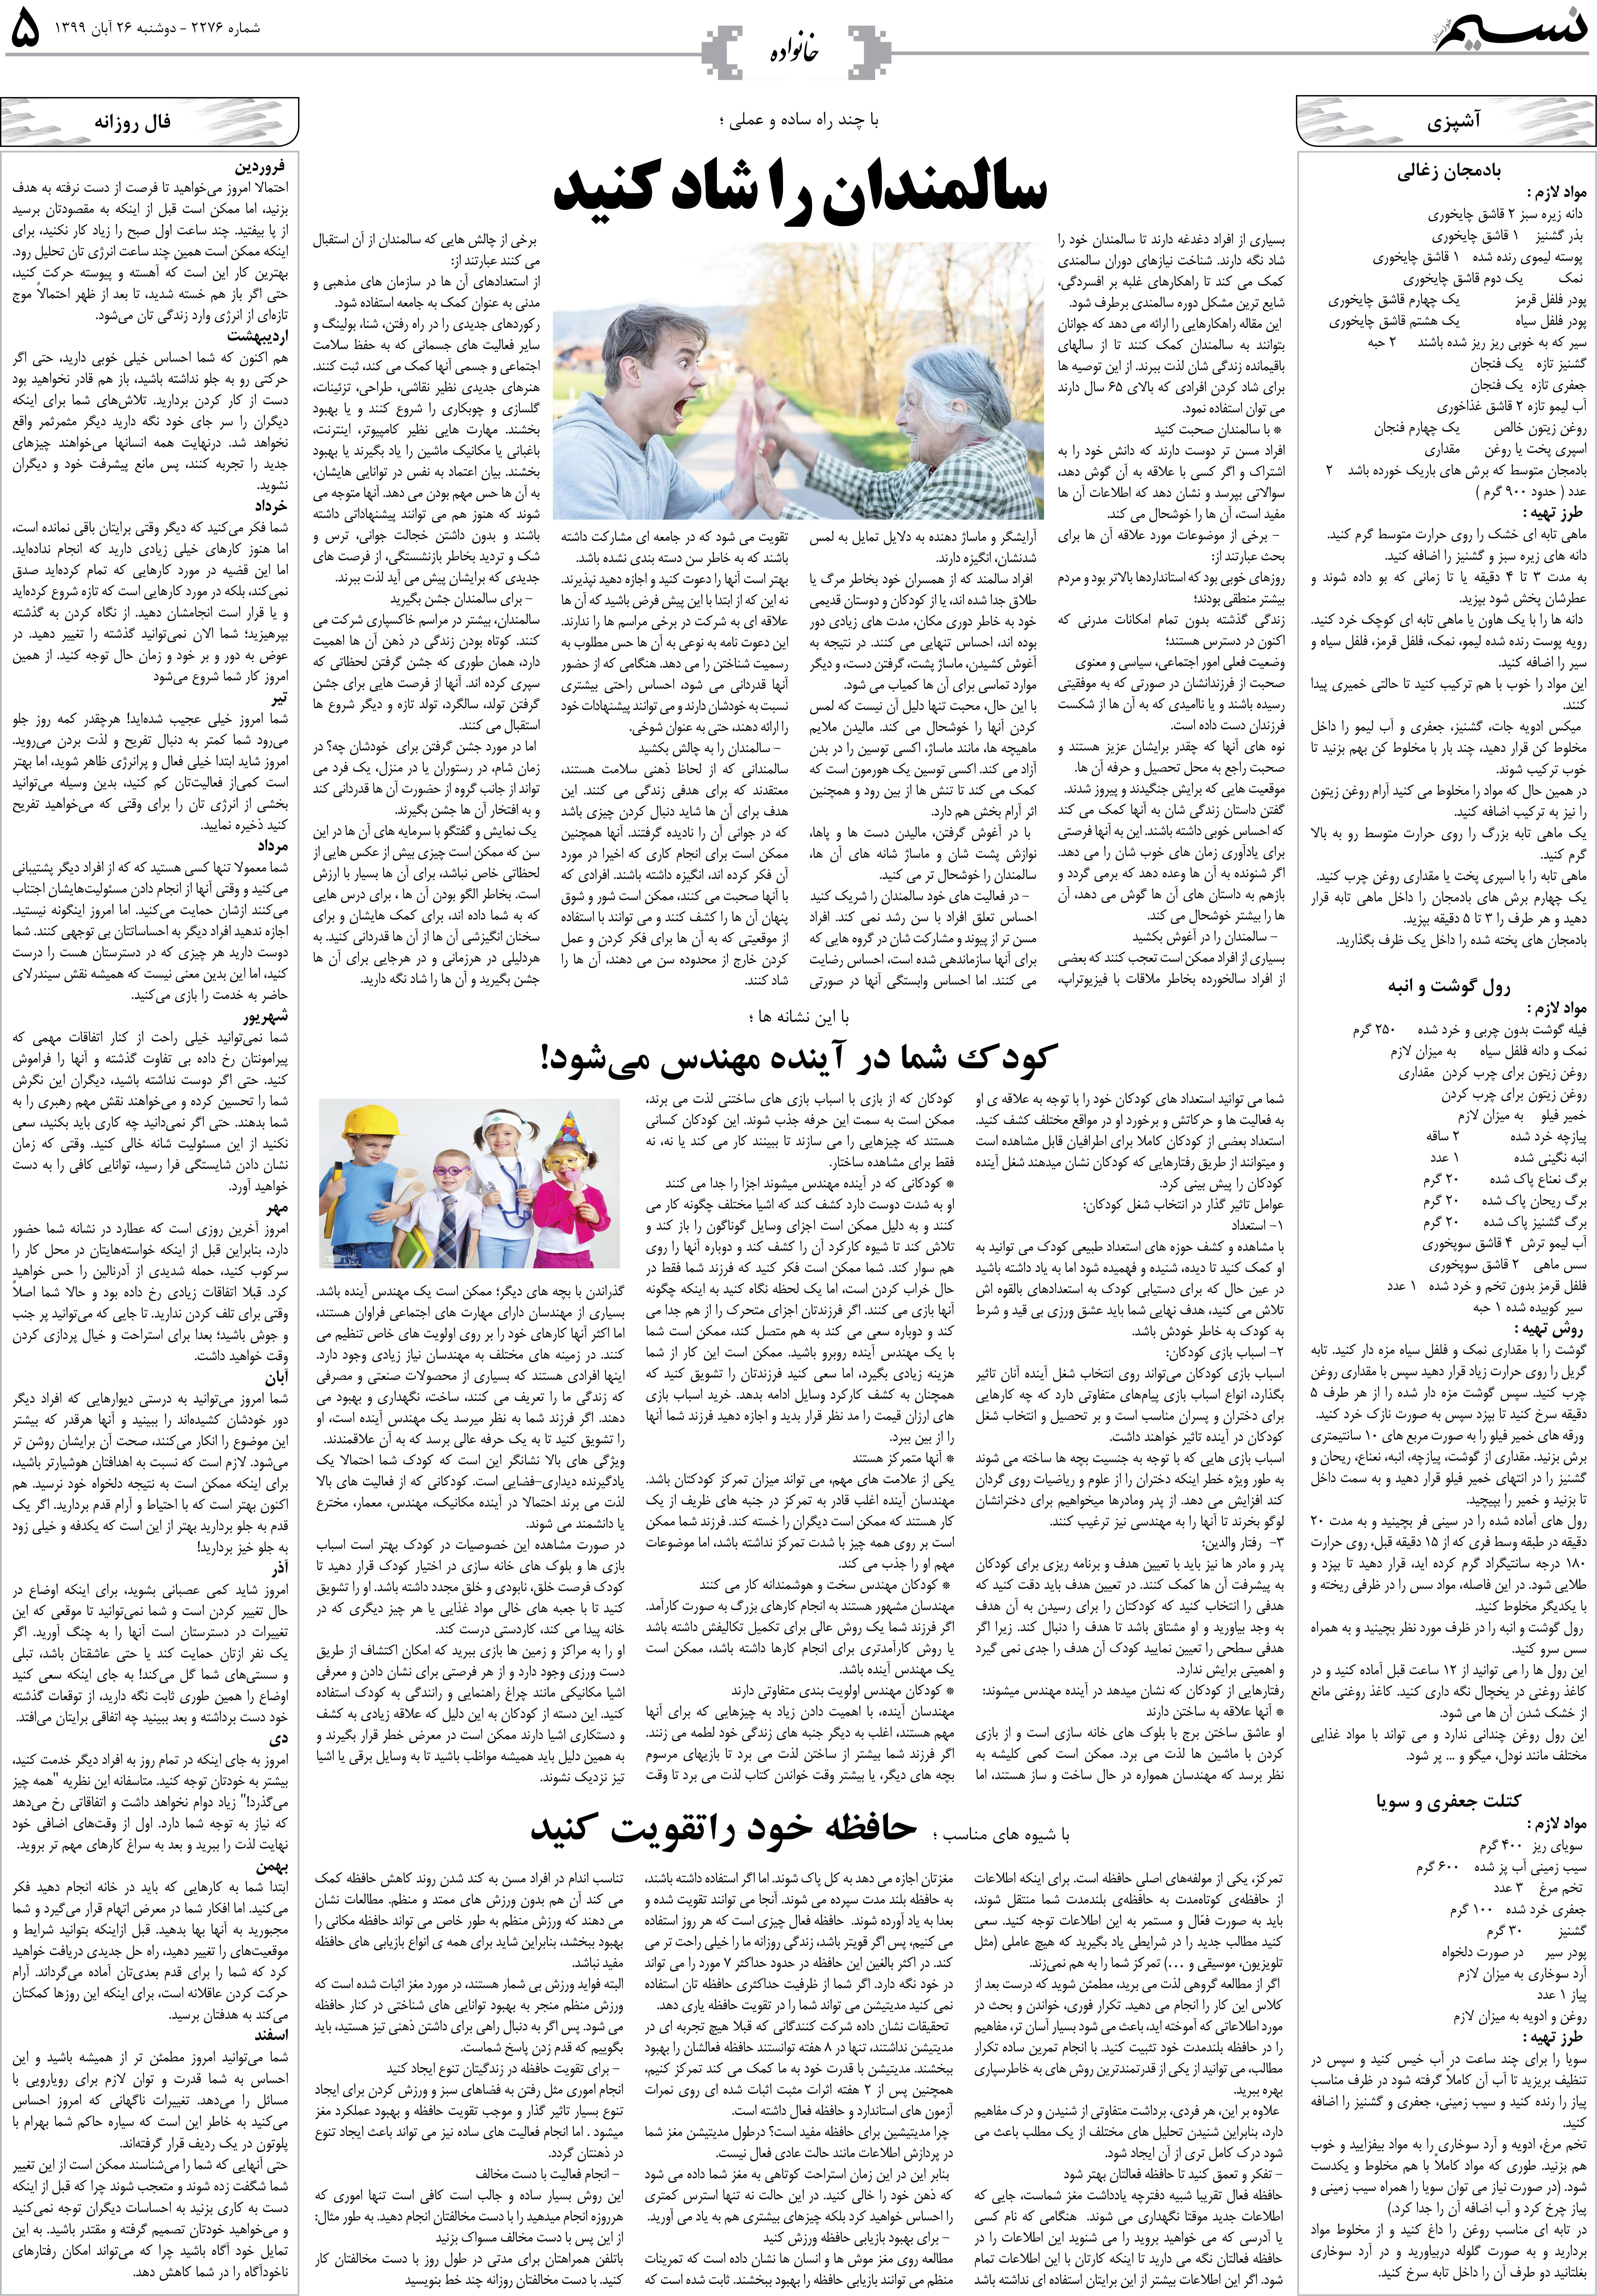 صفحه خانواده روزنامه نسیم شماره 2277